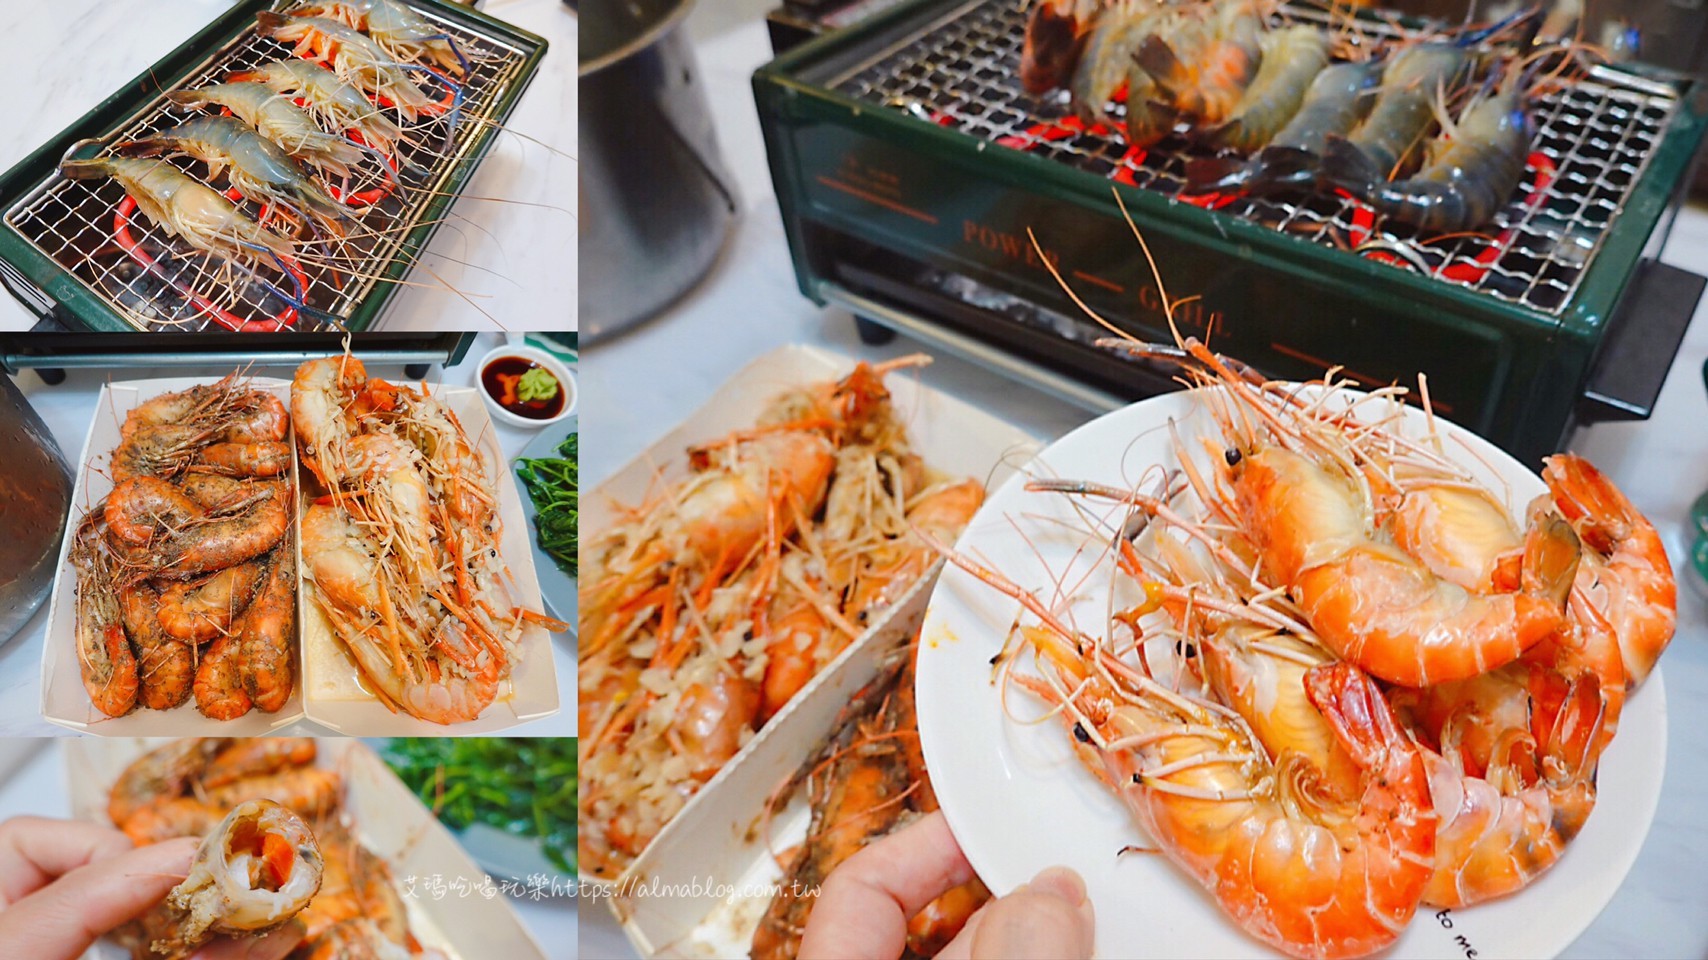 林口美食,泰國蝦吃到飽,泰蝦,泰蝦PA 水道泰國蝦吃到飽,泰蝦PA流水蝦餐廳